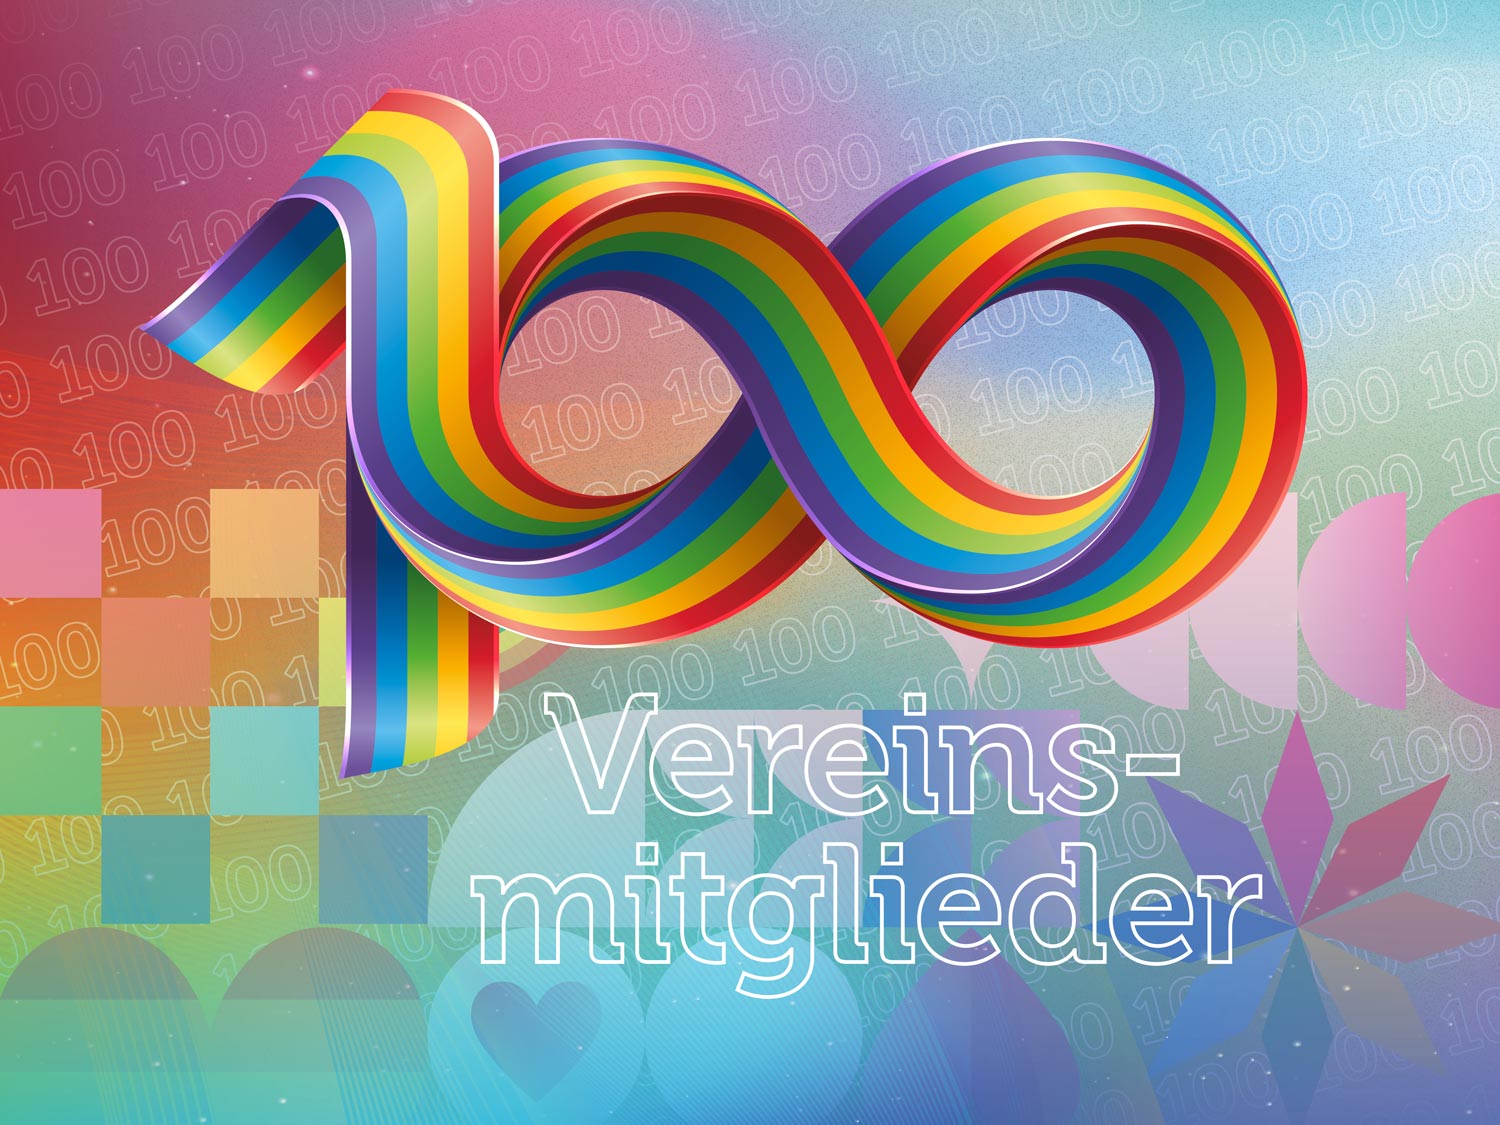 Ein Regenbogenhintergrund mit queeren Symbolen in Regenbogenfarben (Blüten, Herzen, Quadrate, Flaggen). Darüber eine 100 ineinanderverschlungen aus Regenbogensträngen und das Wort "Vereinsmitglieder" darunter.